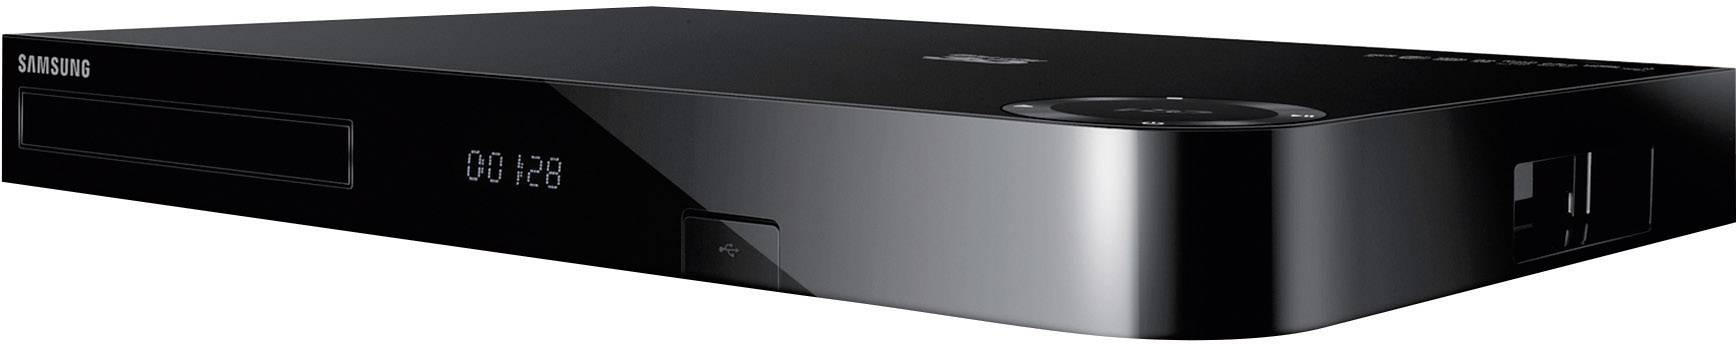 3d Blu Ray Player Hdd Recorder Samsung Bd F8509s 500 Gb Dvb S